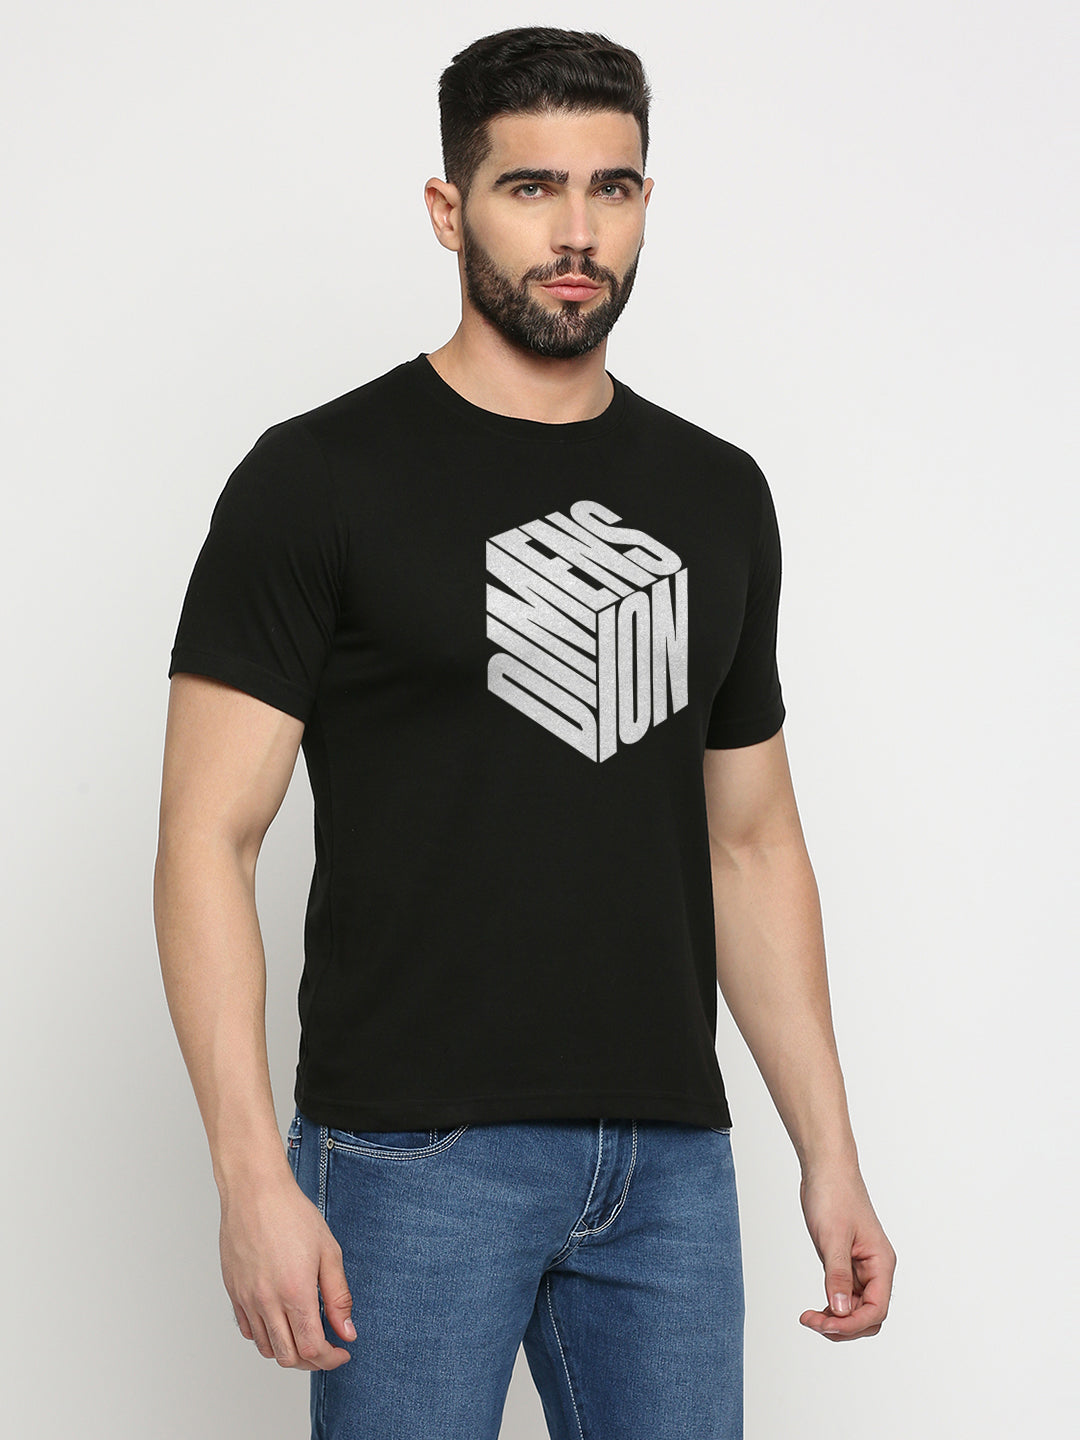 Dimension Cube T-Shirt